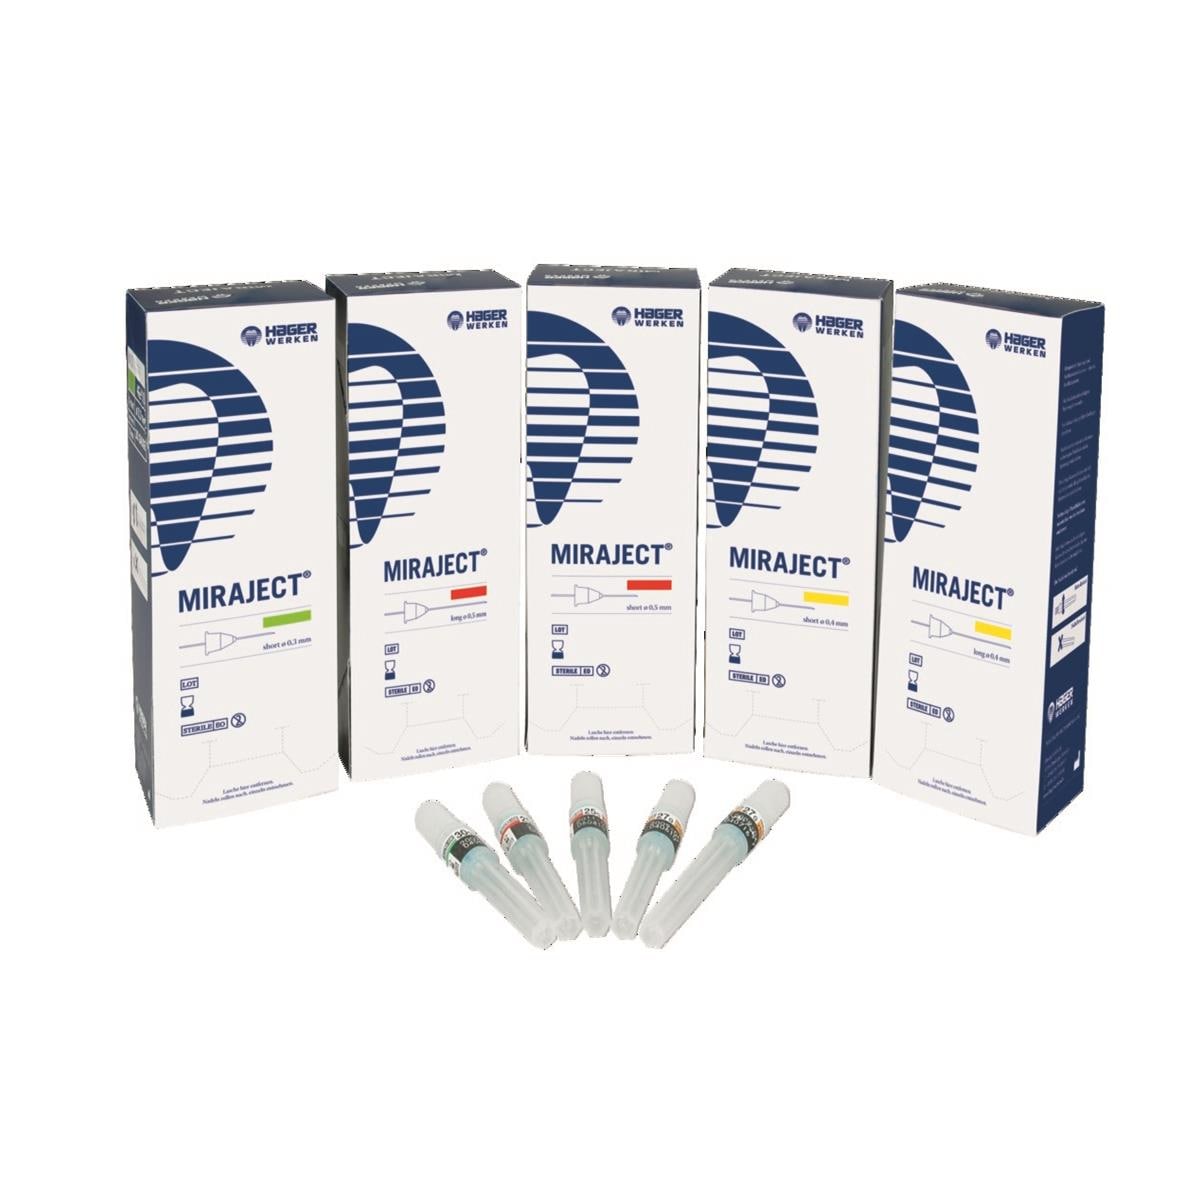 Miraject Aiguille injection 25G 0.5 x 21mm - 254201 - HAGER & WERKEN